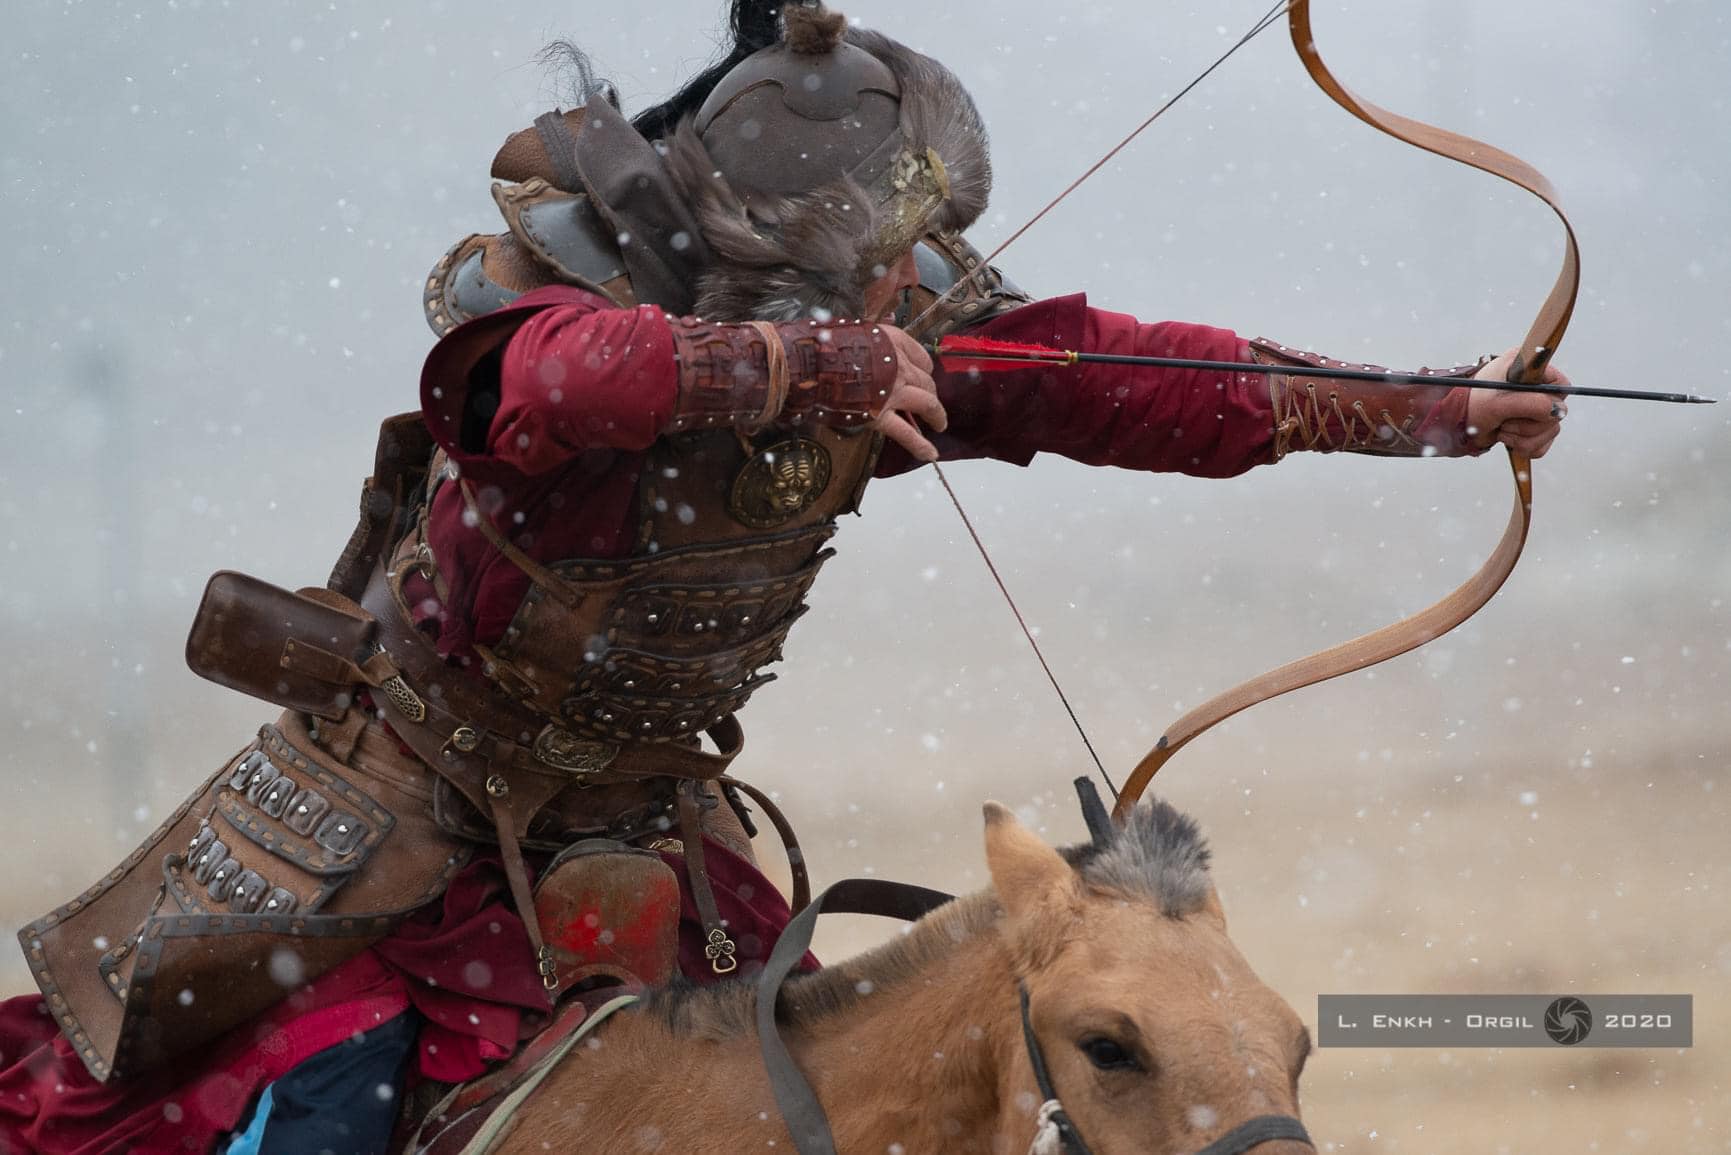 Mongolian horseback archery